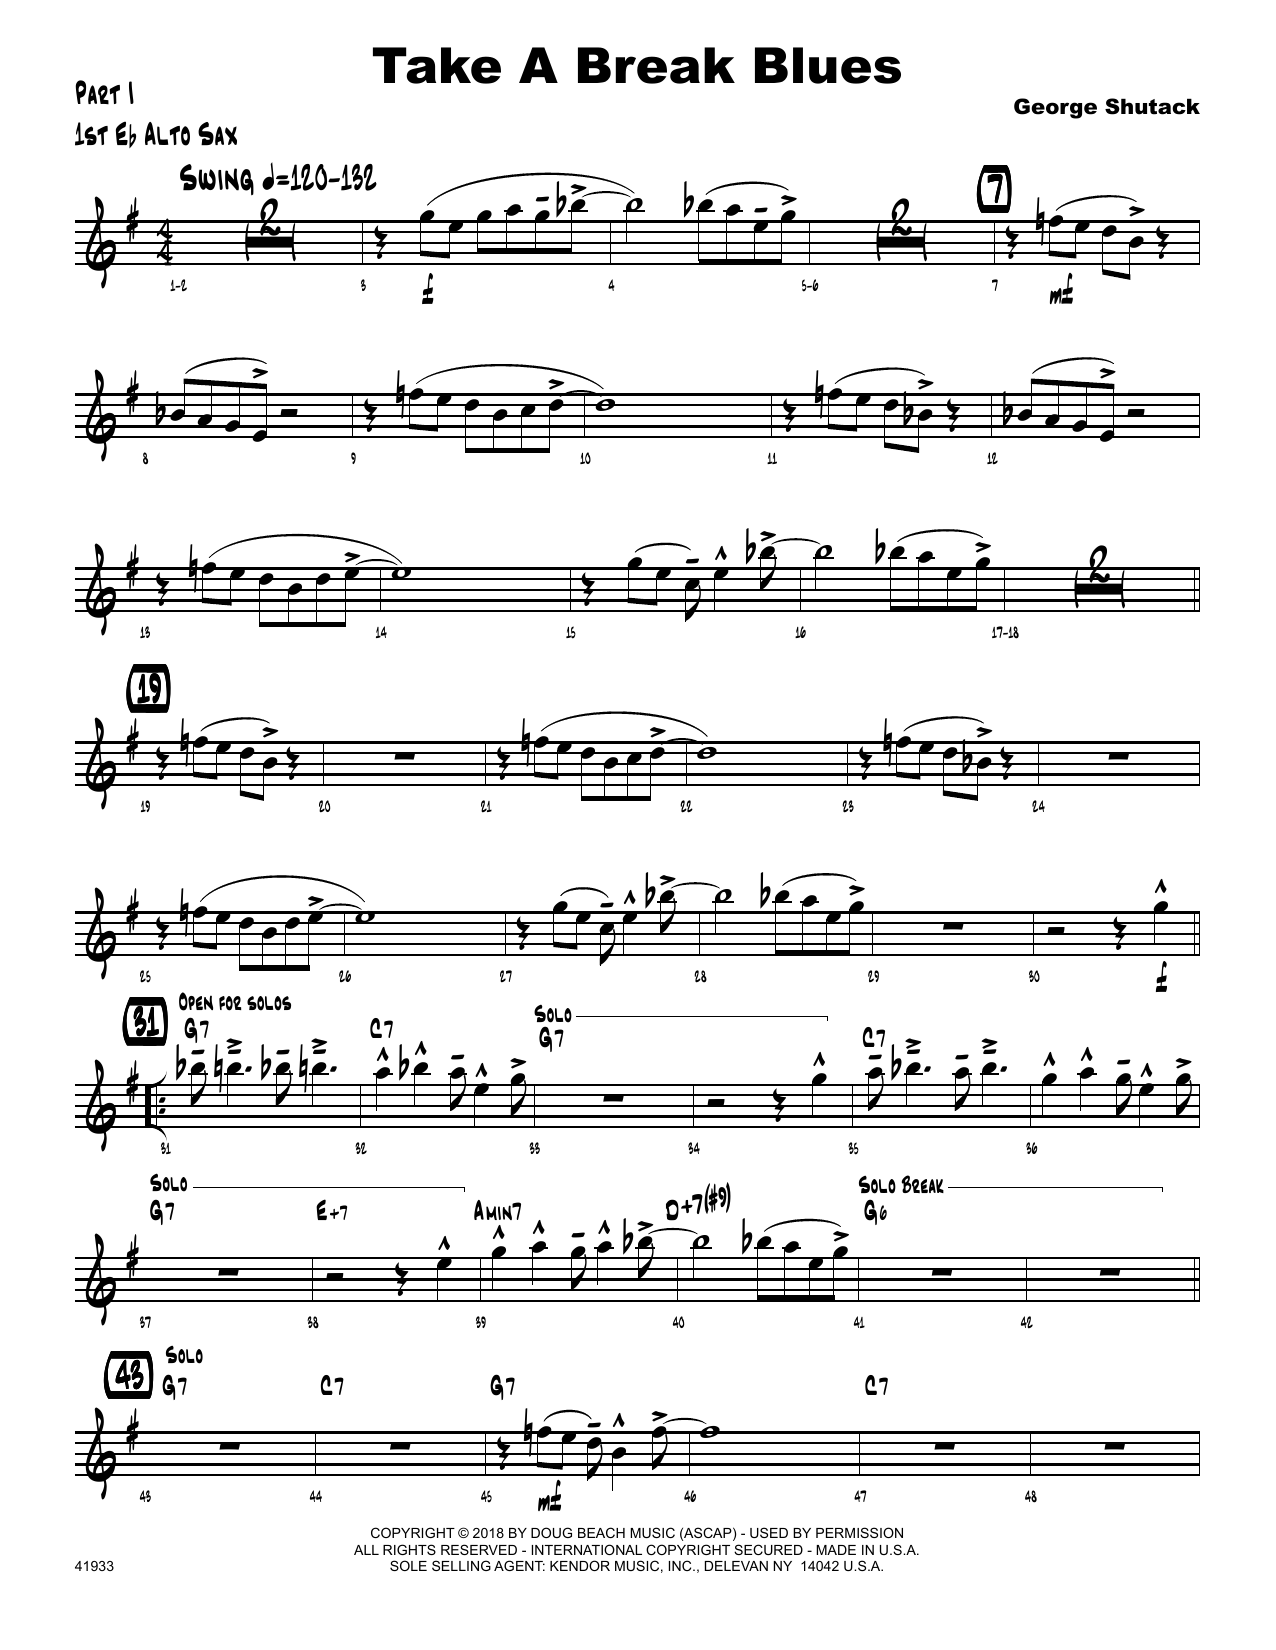 Download George Shutack Take A Break Blues - 1st Eb Alto Saxoph Sheet Music